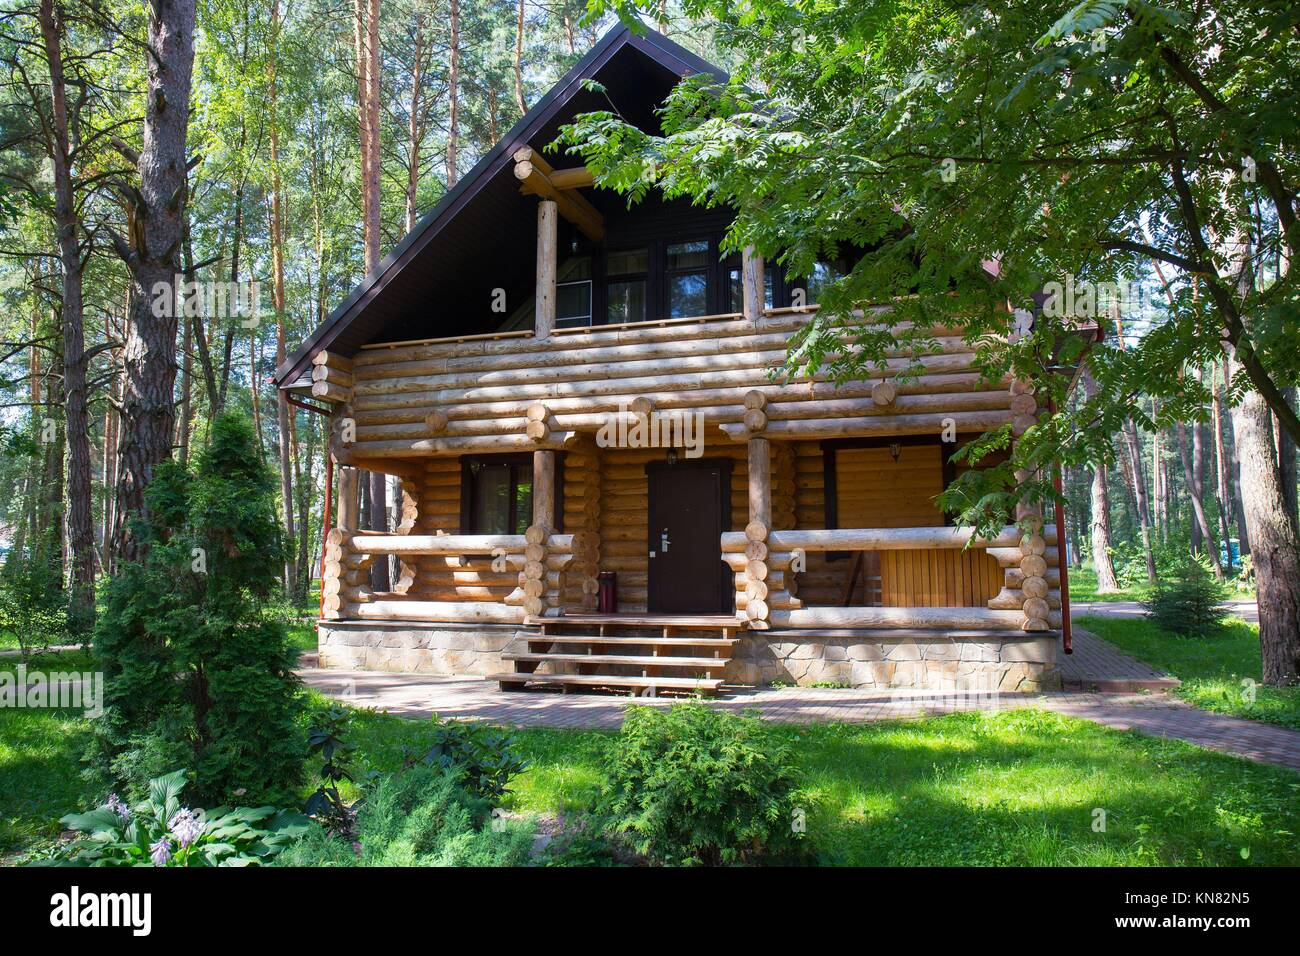 Una casa tradicional ruso, hecho de madera o maderas y con nalichniki,  elegantes adornos en madera decorativa, alrededor de las ventanas. El  estilo de esta casa es disa Fotografía de stock 